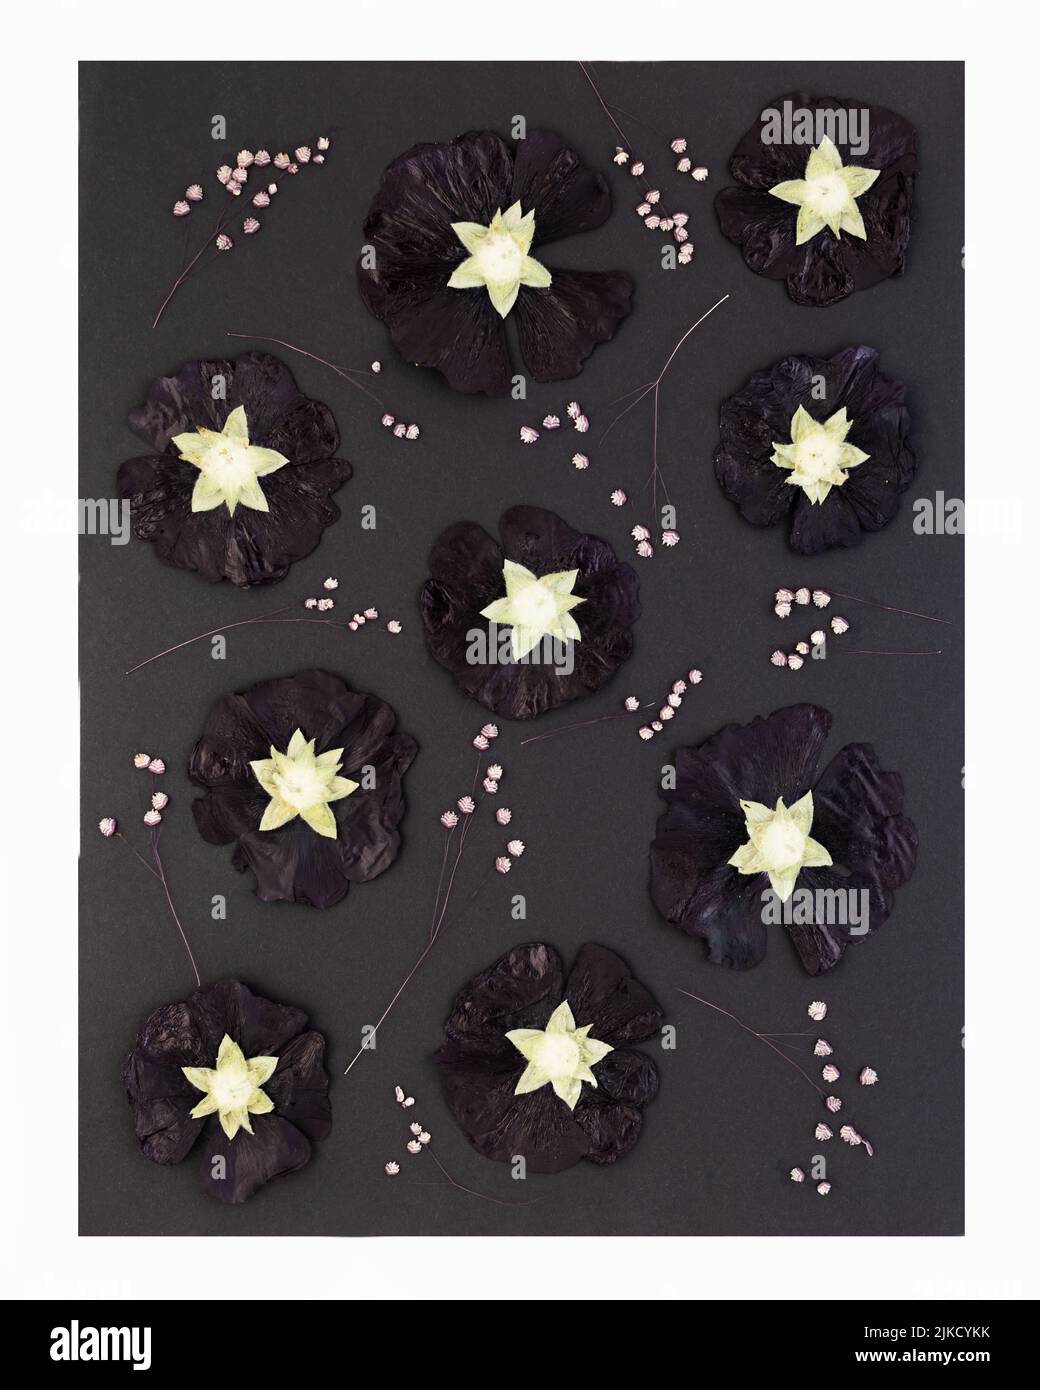 Arte contemporanea botanica dei fiori pressati. Fiori scuri asciutti di hollyhock o mallow su sfondo nero. Po Foto Stock